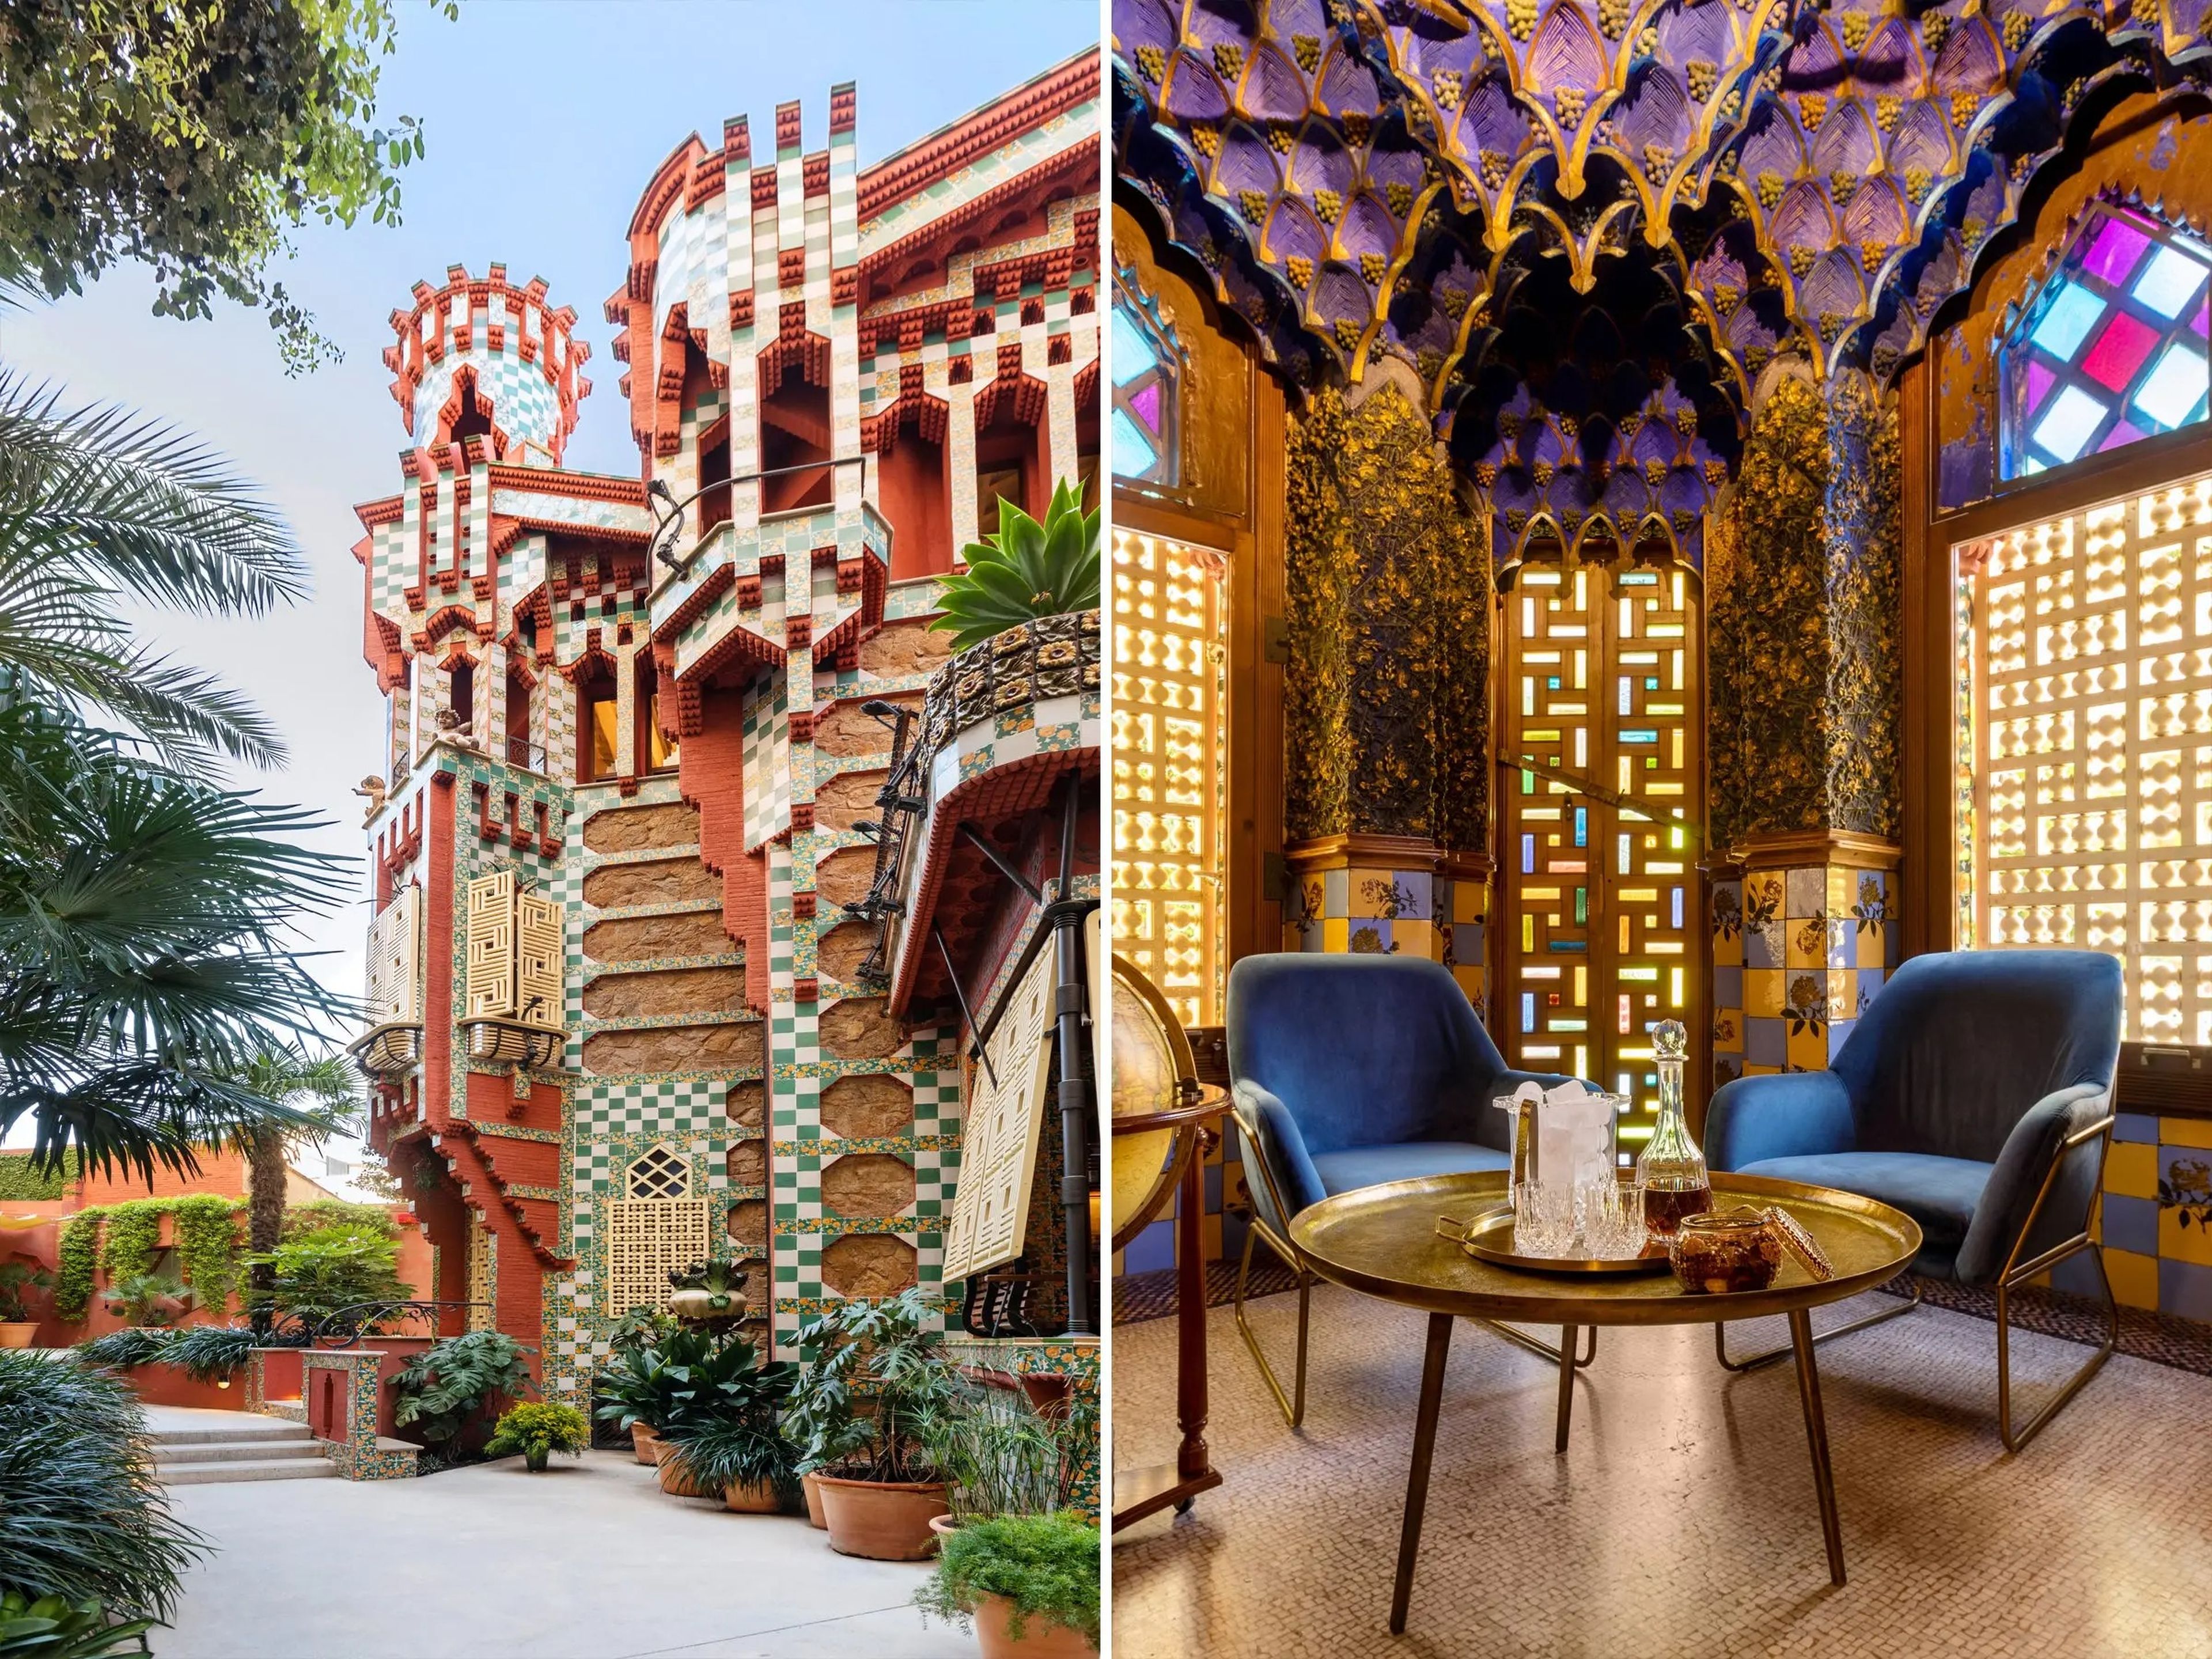 Casa Vicens, una casa de verano en Barcelona diseñada por Antoni Gaudí.